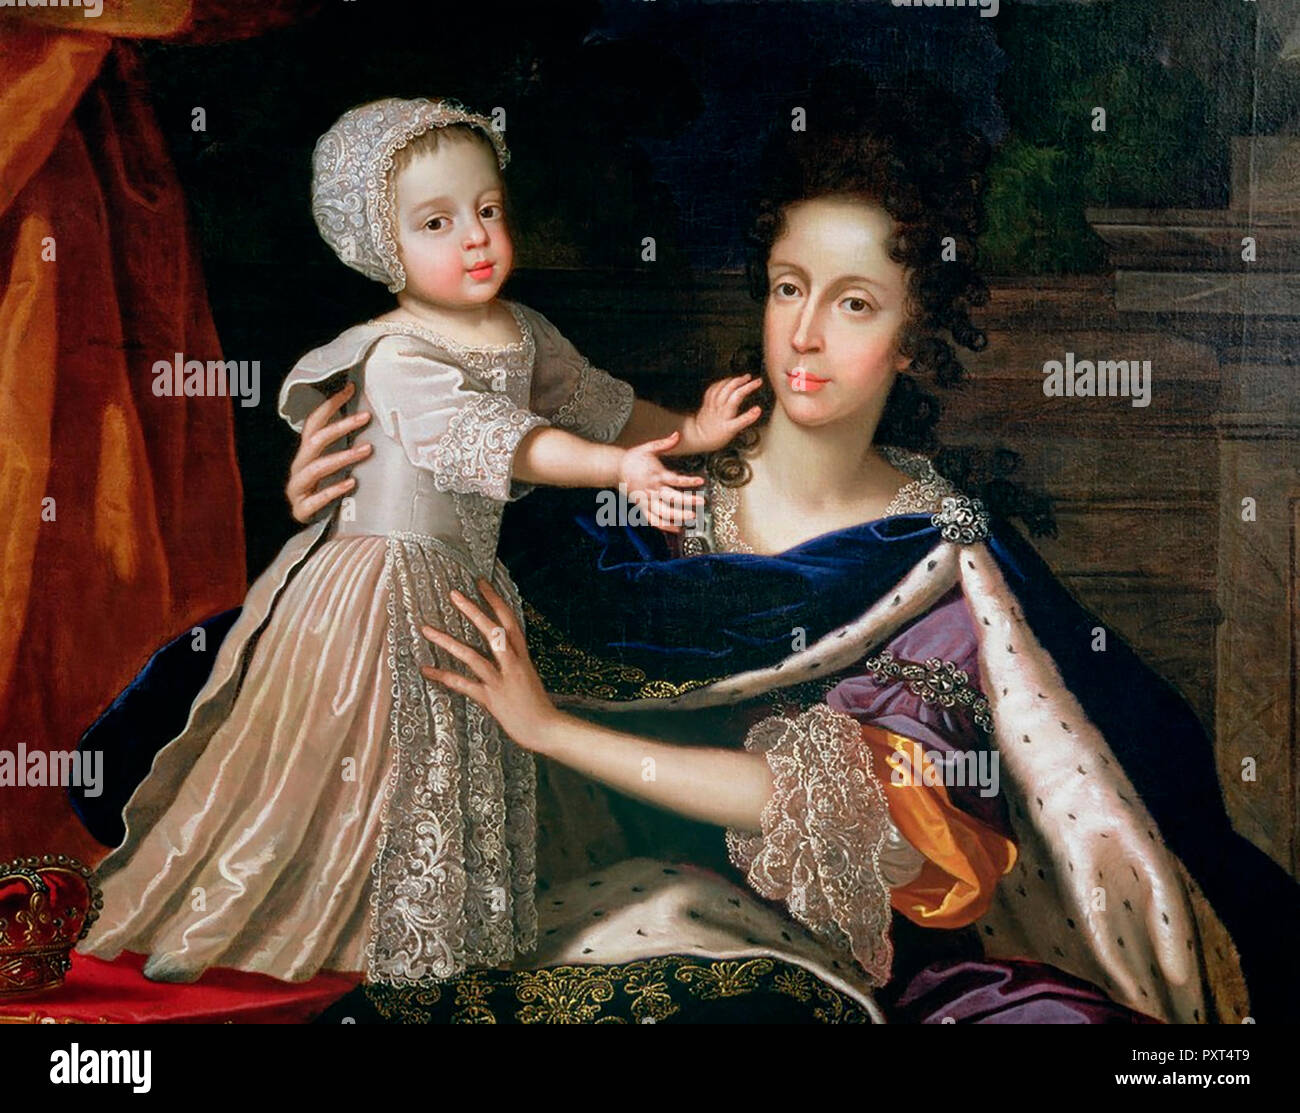 Giacomo III e Maria di Modena - La Regina moglie di Giacomo II, con il suo unico figlio, Giacomo III, il pretendente giacobita. Benedetto Gennari II, circa 1690 Foto Stock